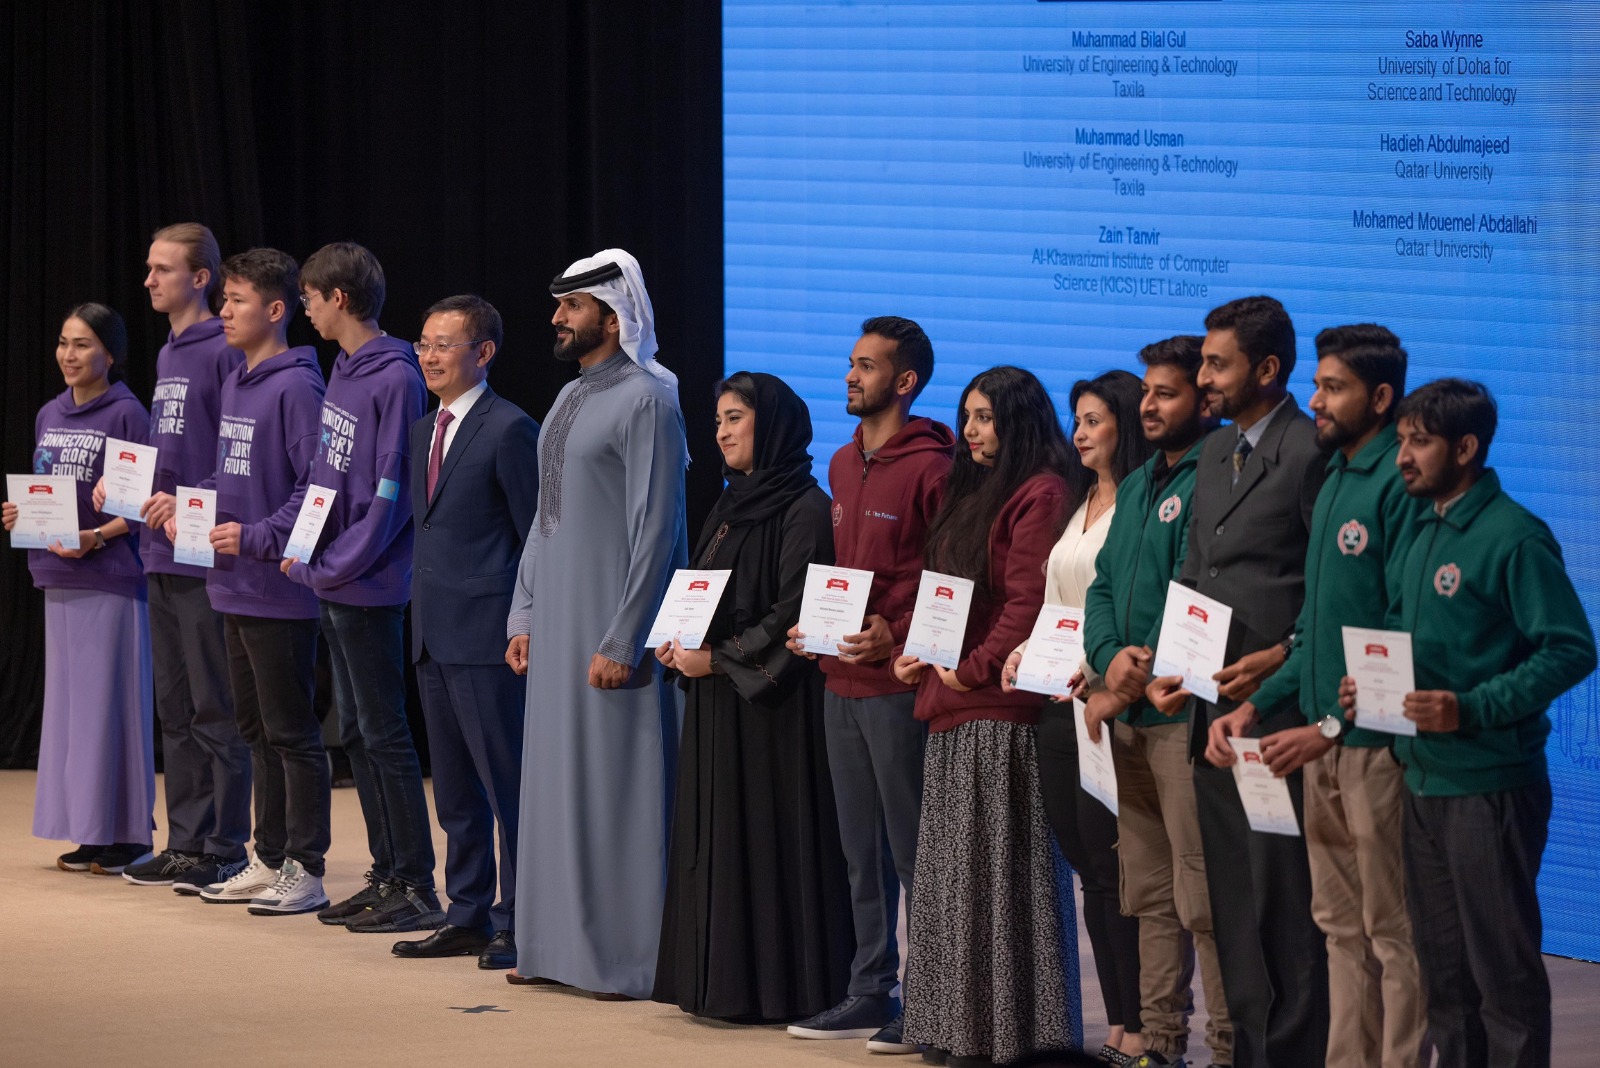 تكريم الفائزين في النهائيات الإقليمية لمسابقة هواوي لتقنية المعلومات والاتصالات في منطقة الشرق الأوسط وآسيا الوسطى